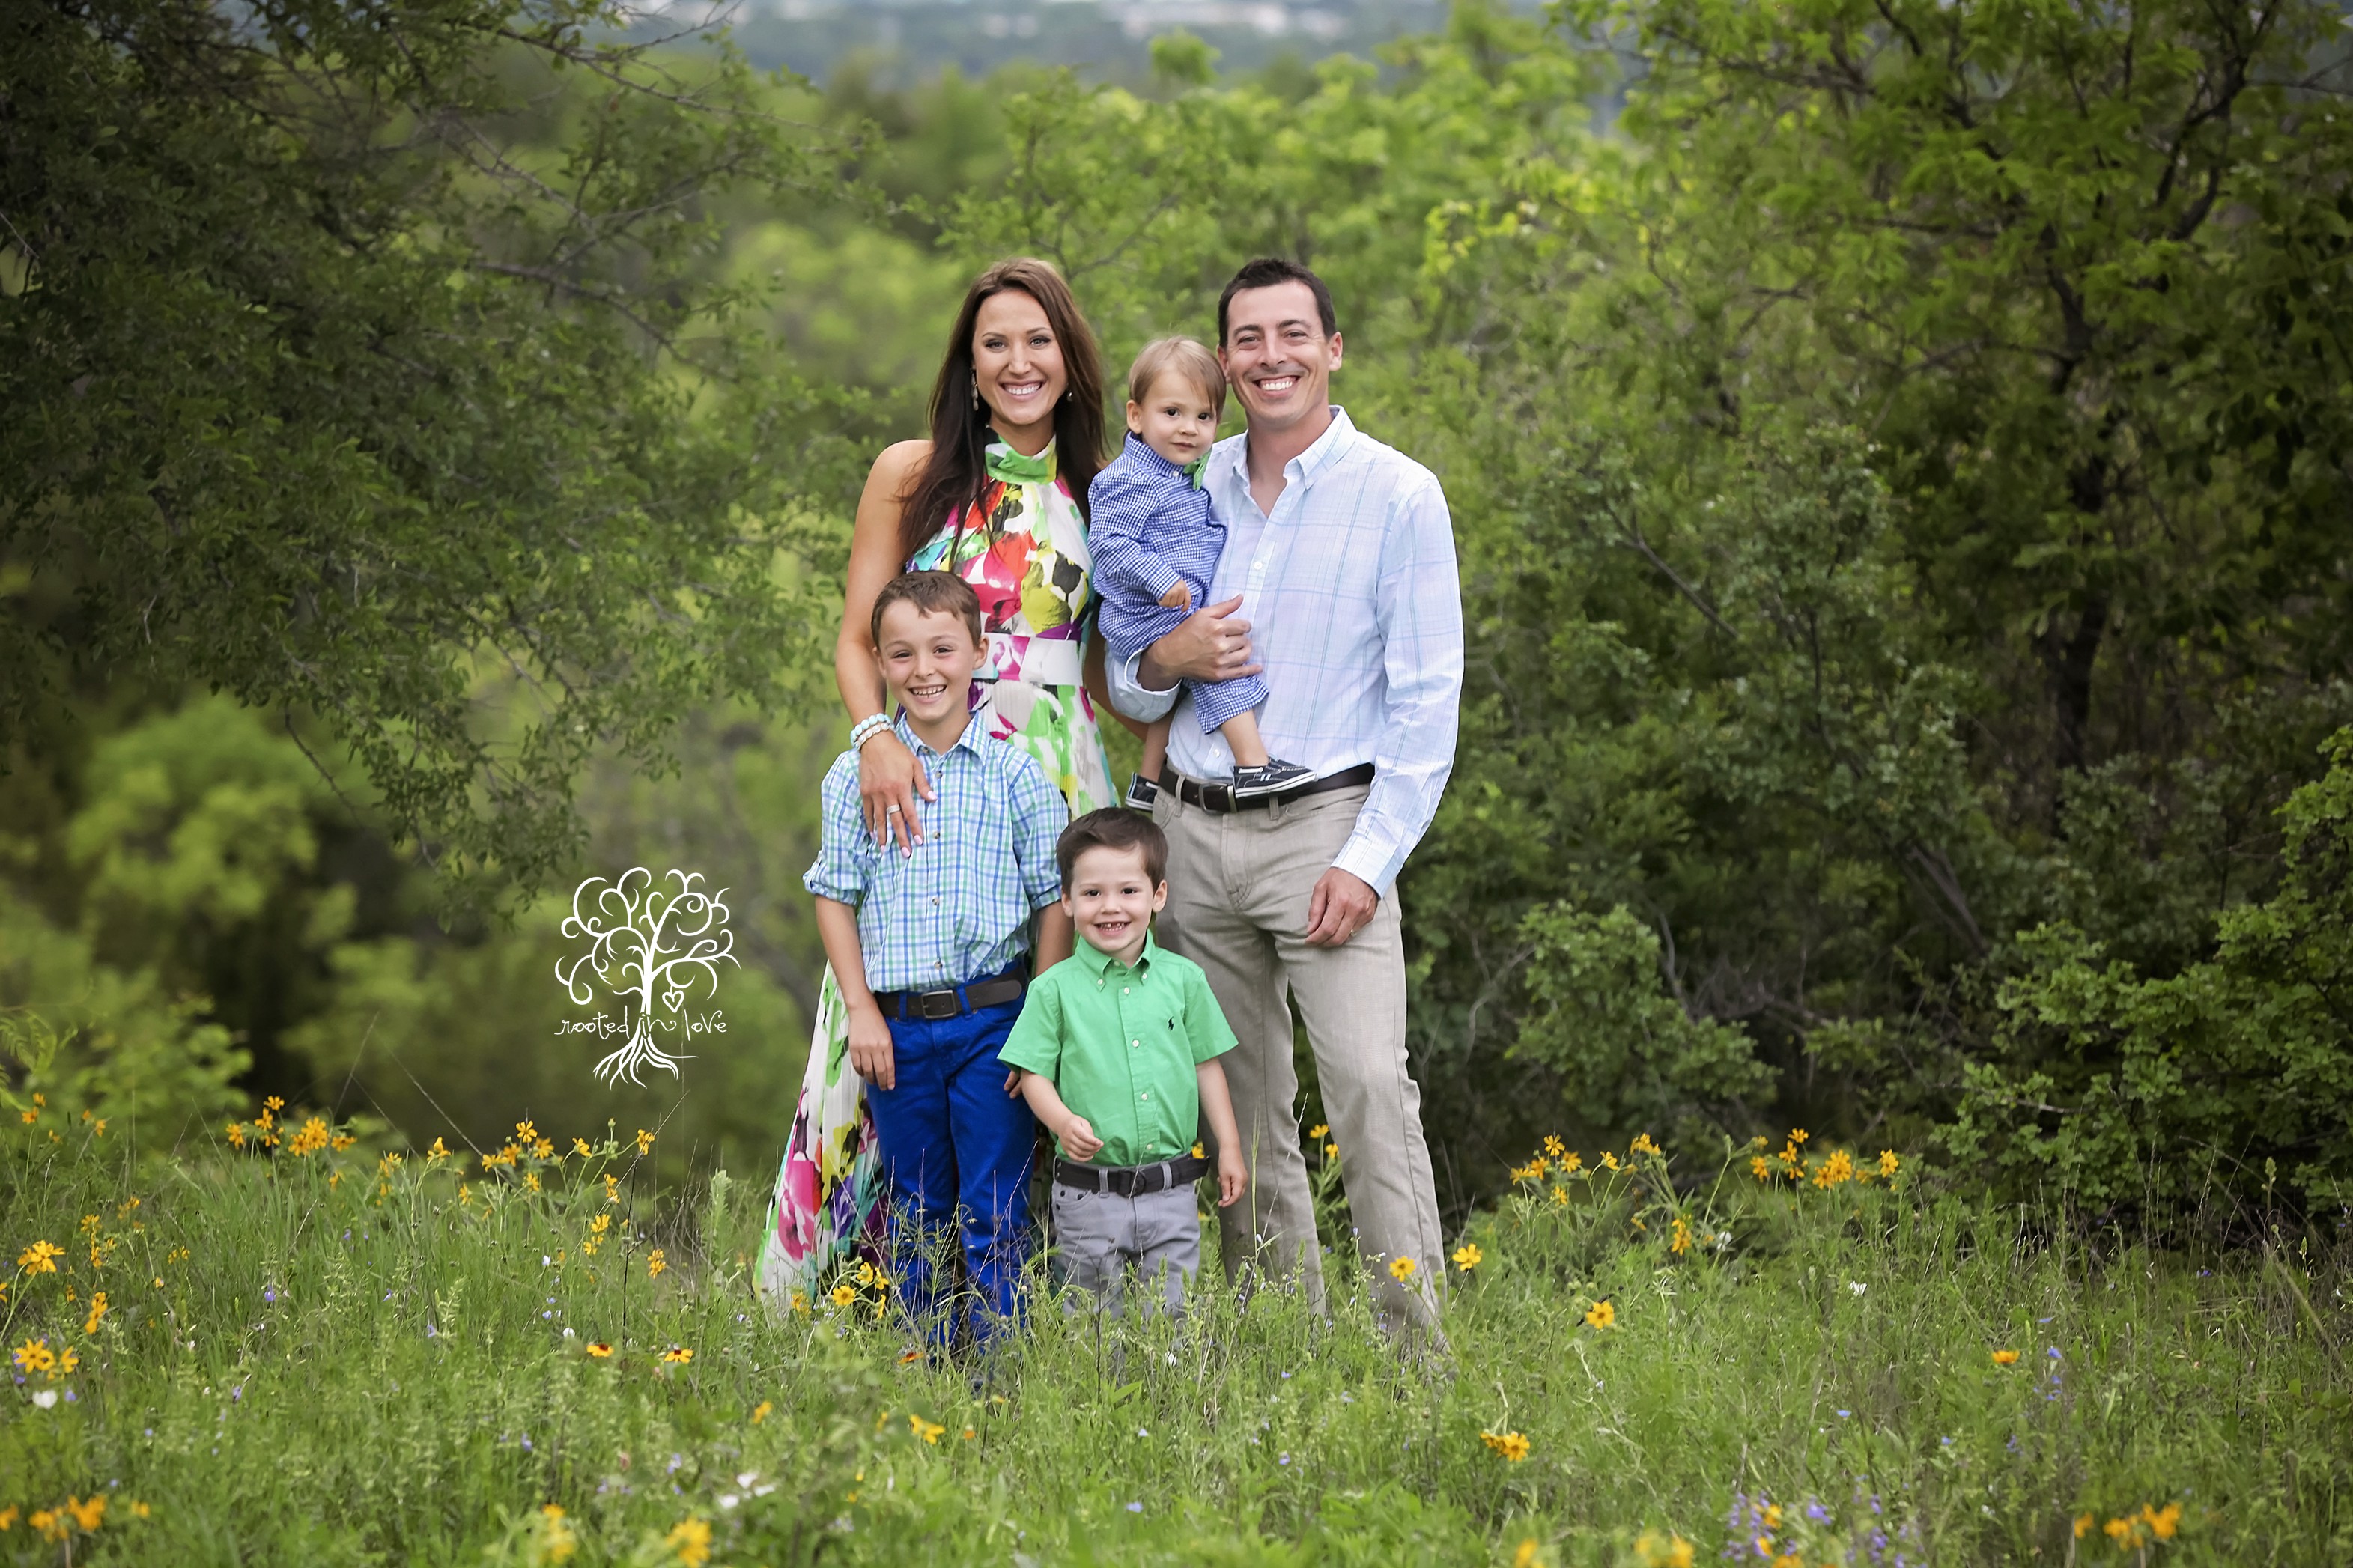 Spooner family |Fort Worth family photographer